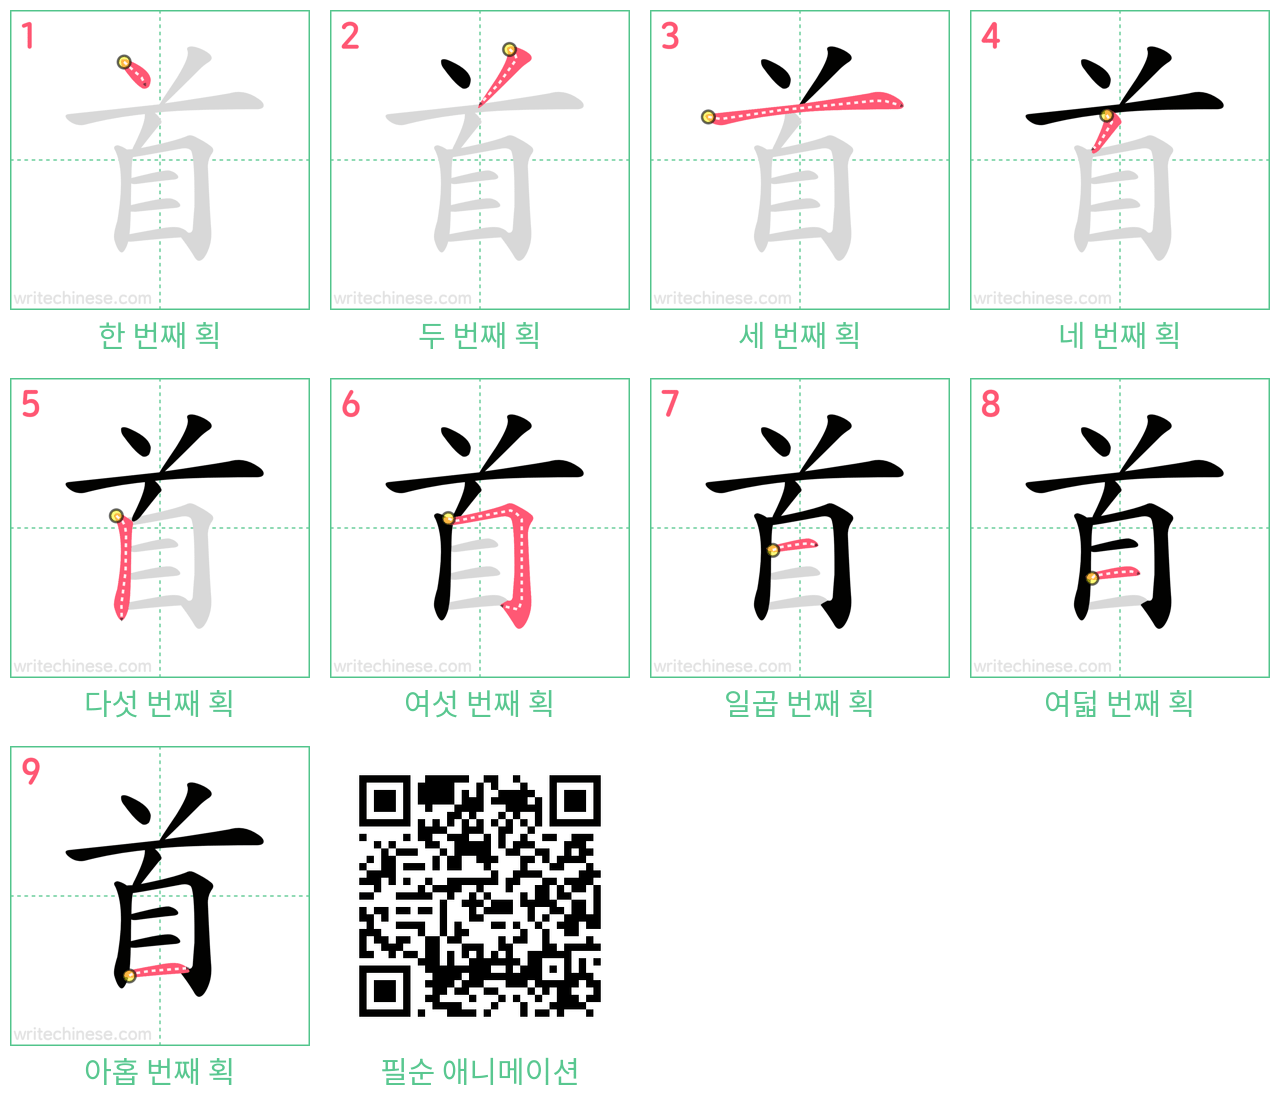 首 step-by-step stroke order diagrams